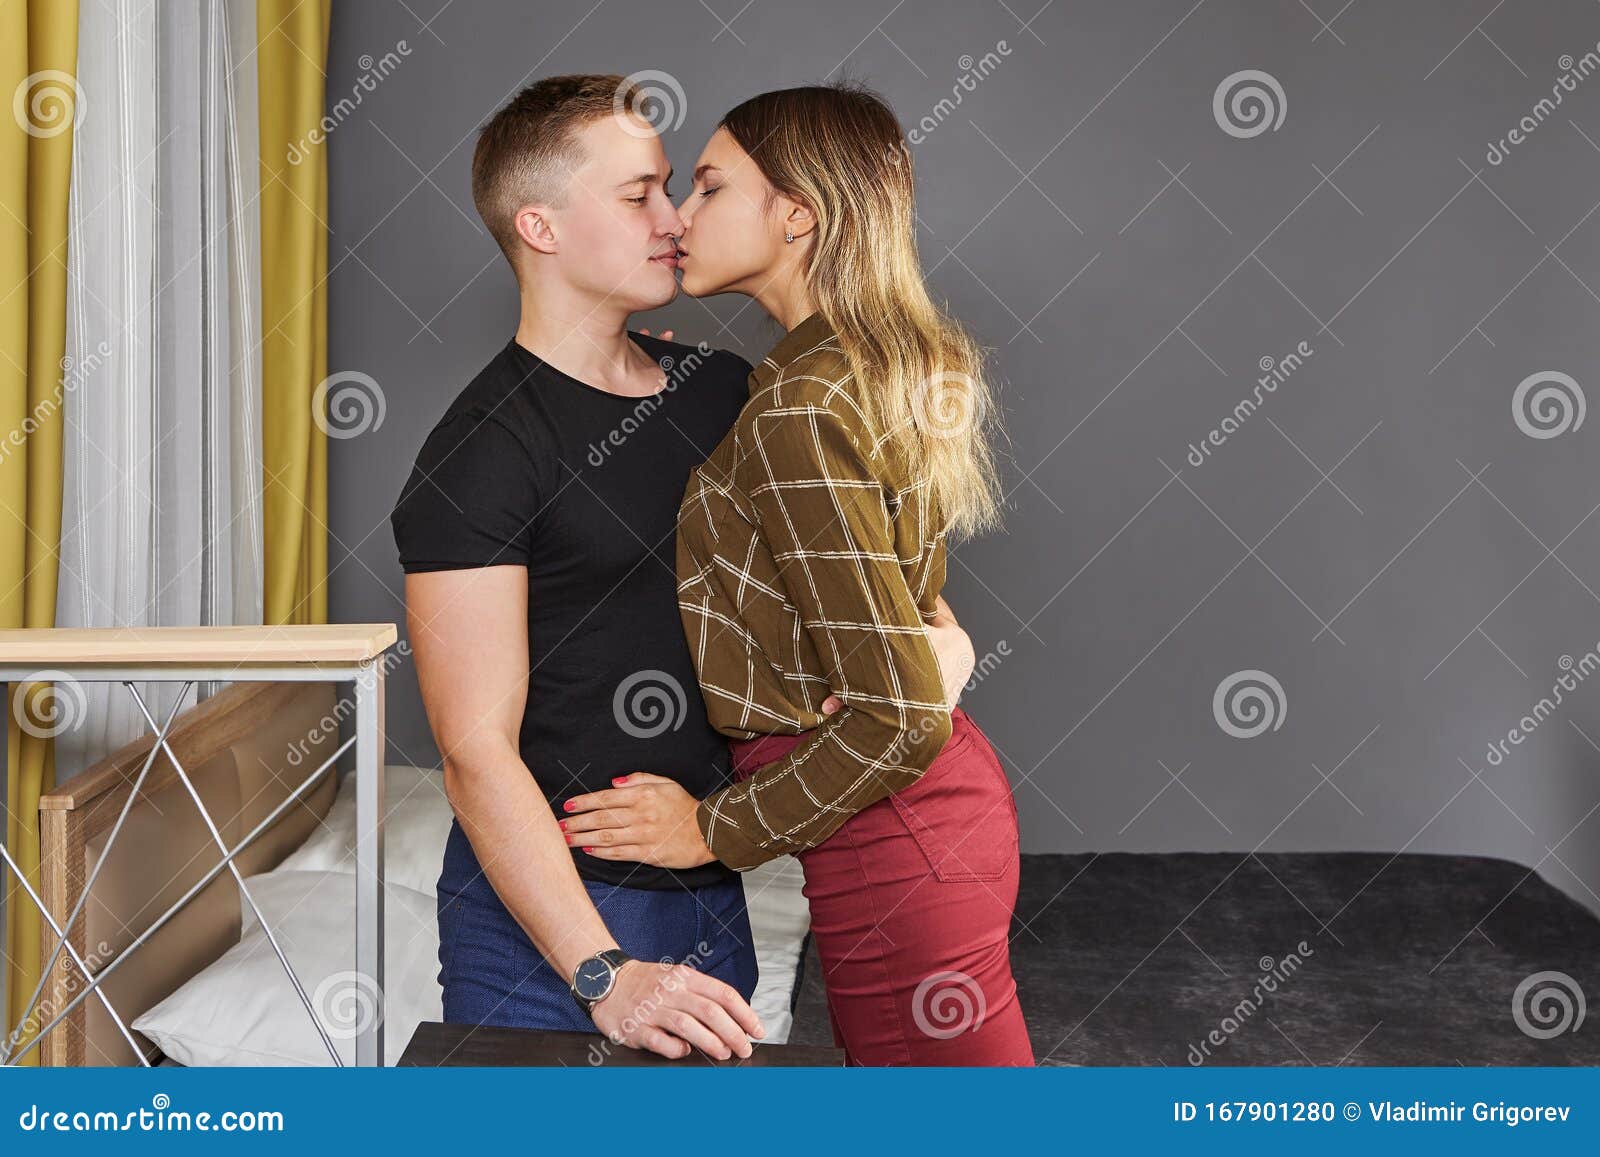 Парень И Девушка Целуются Фото